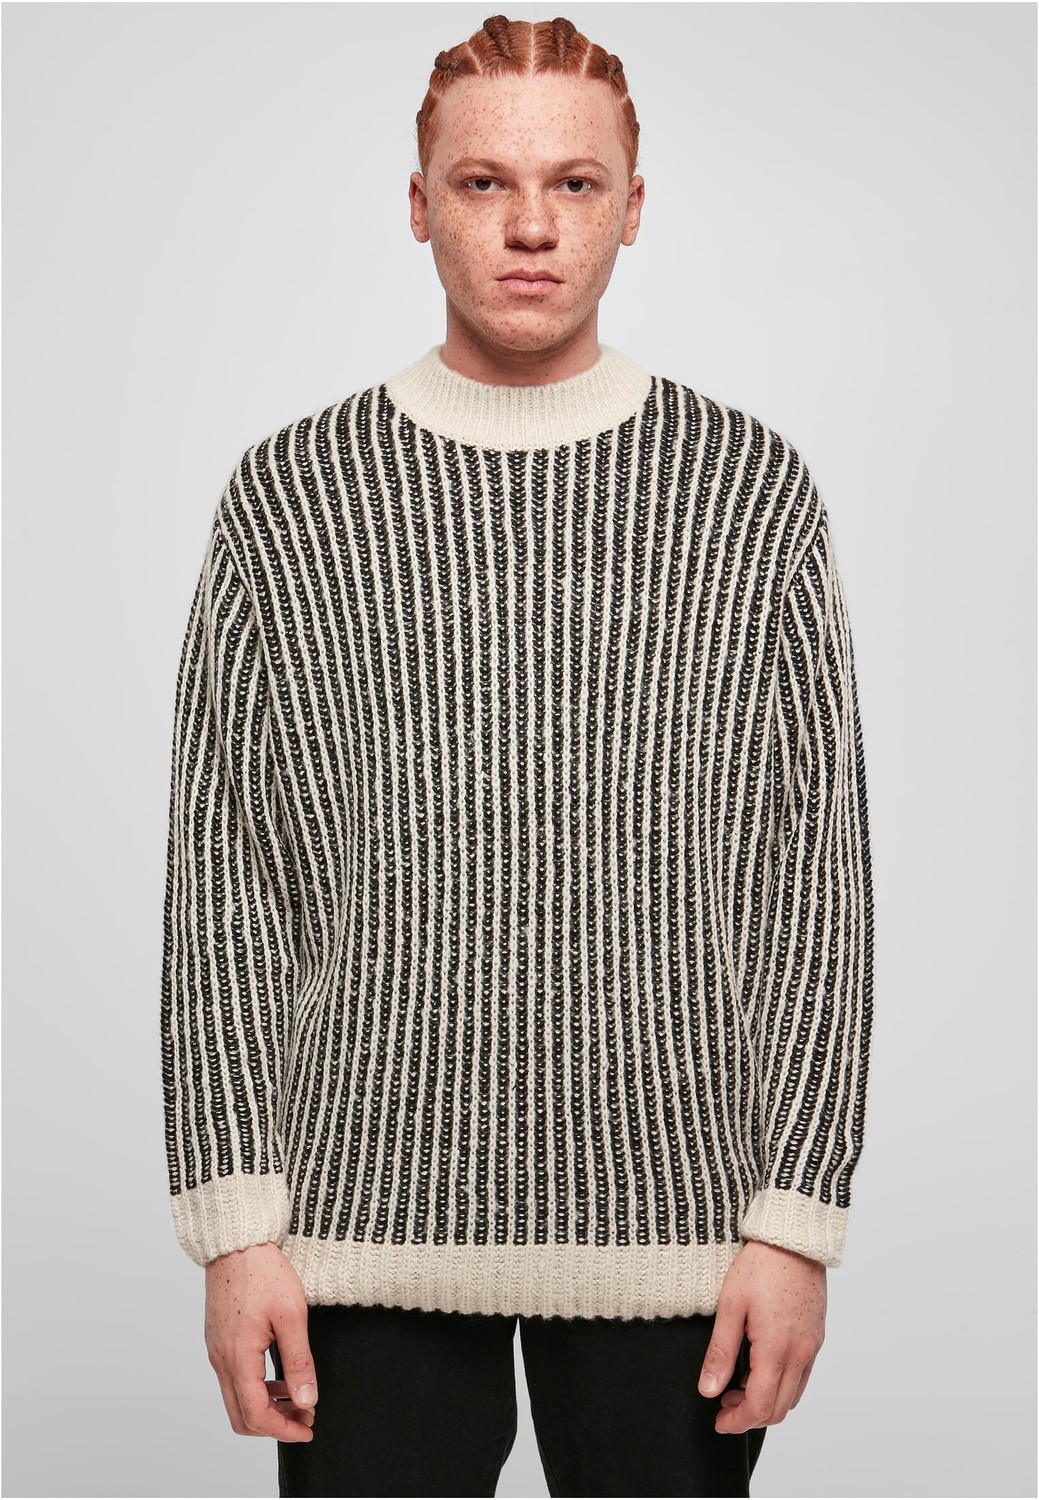 Oversized Two Tone Sweater whitesand/black